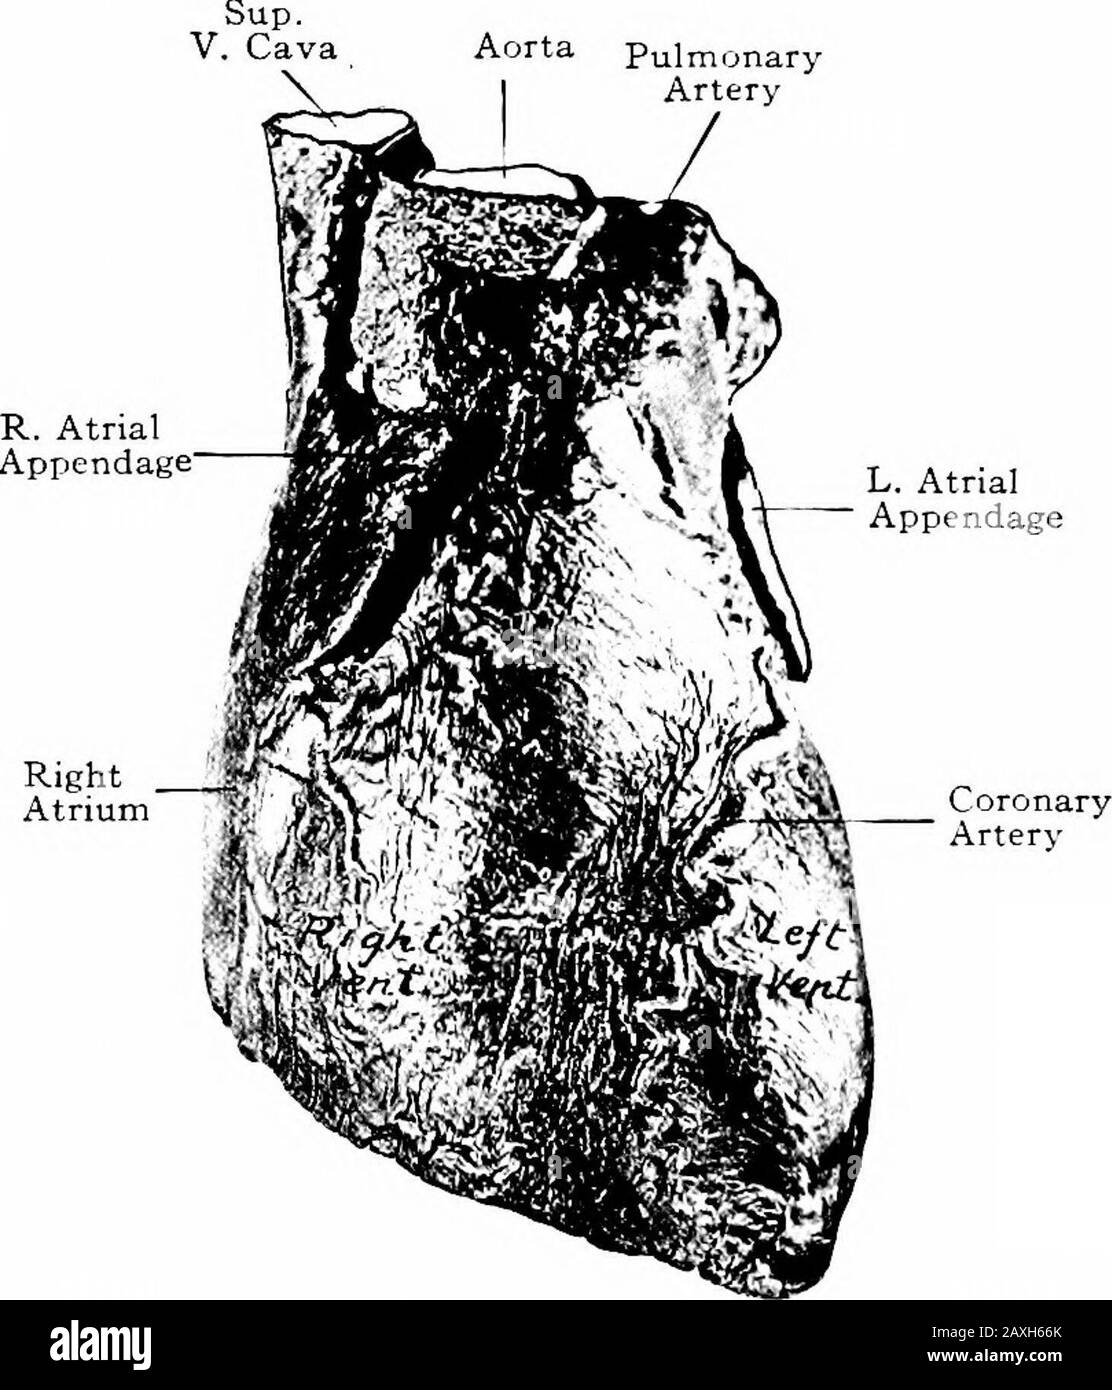 Un manuel d'anatomie . re-courant des nerfs laryngés et sympathiques et de la glande thymus. Le COEUR 215 Le médiastin inférieur est la partie la plus large et est divisé en parties intoventrales, moyennes et dorsales. Les Colles ventrales entre le thésternum et le péricarde contiennent des ganglions lymphatiques, des branches de l'artère mammaire interne et des tissus aréolaires. La partie centrale est la plus grande et est délimitée par le péricar-dium. Son contenu est le péricarde, le coeur, les racines des grandeur et les nerfs phreniques. Le médiastin dorsal se trouve derrière le péricarde. Ses contentssont le thorac descendant Banque D'Images